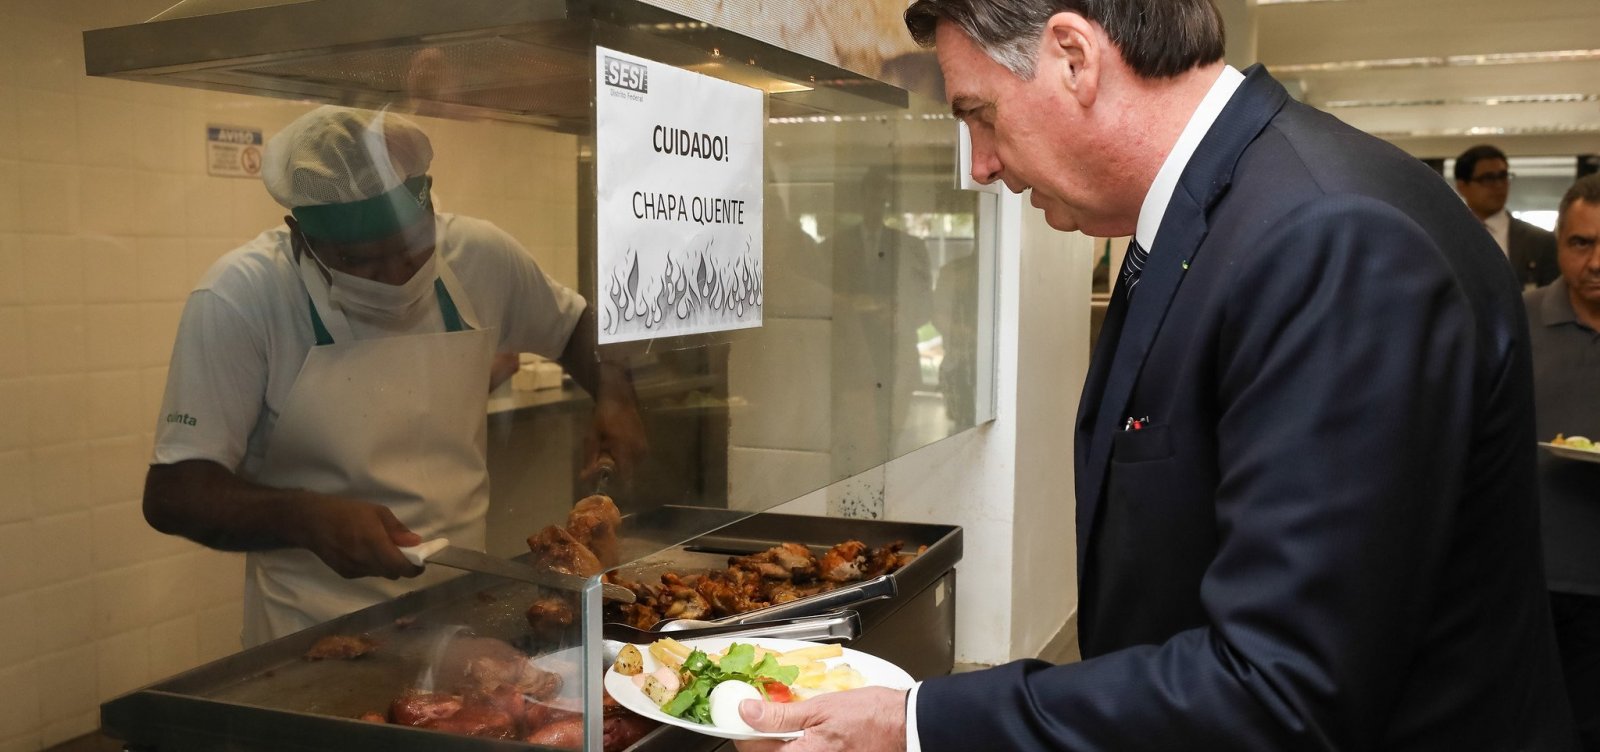 'Passar fome no Brasil é uma grande mentira', diz Bolsonaro